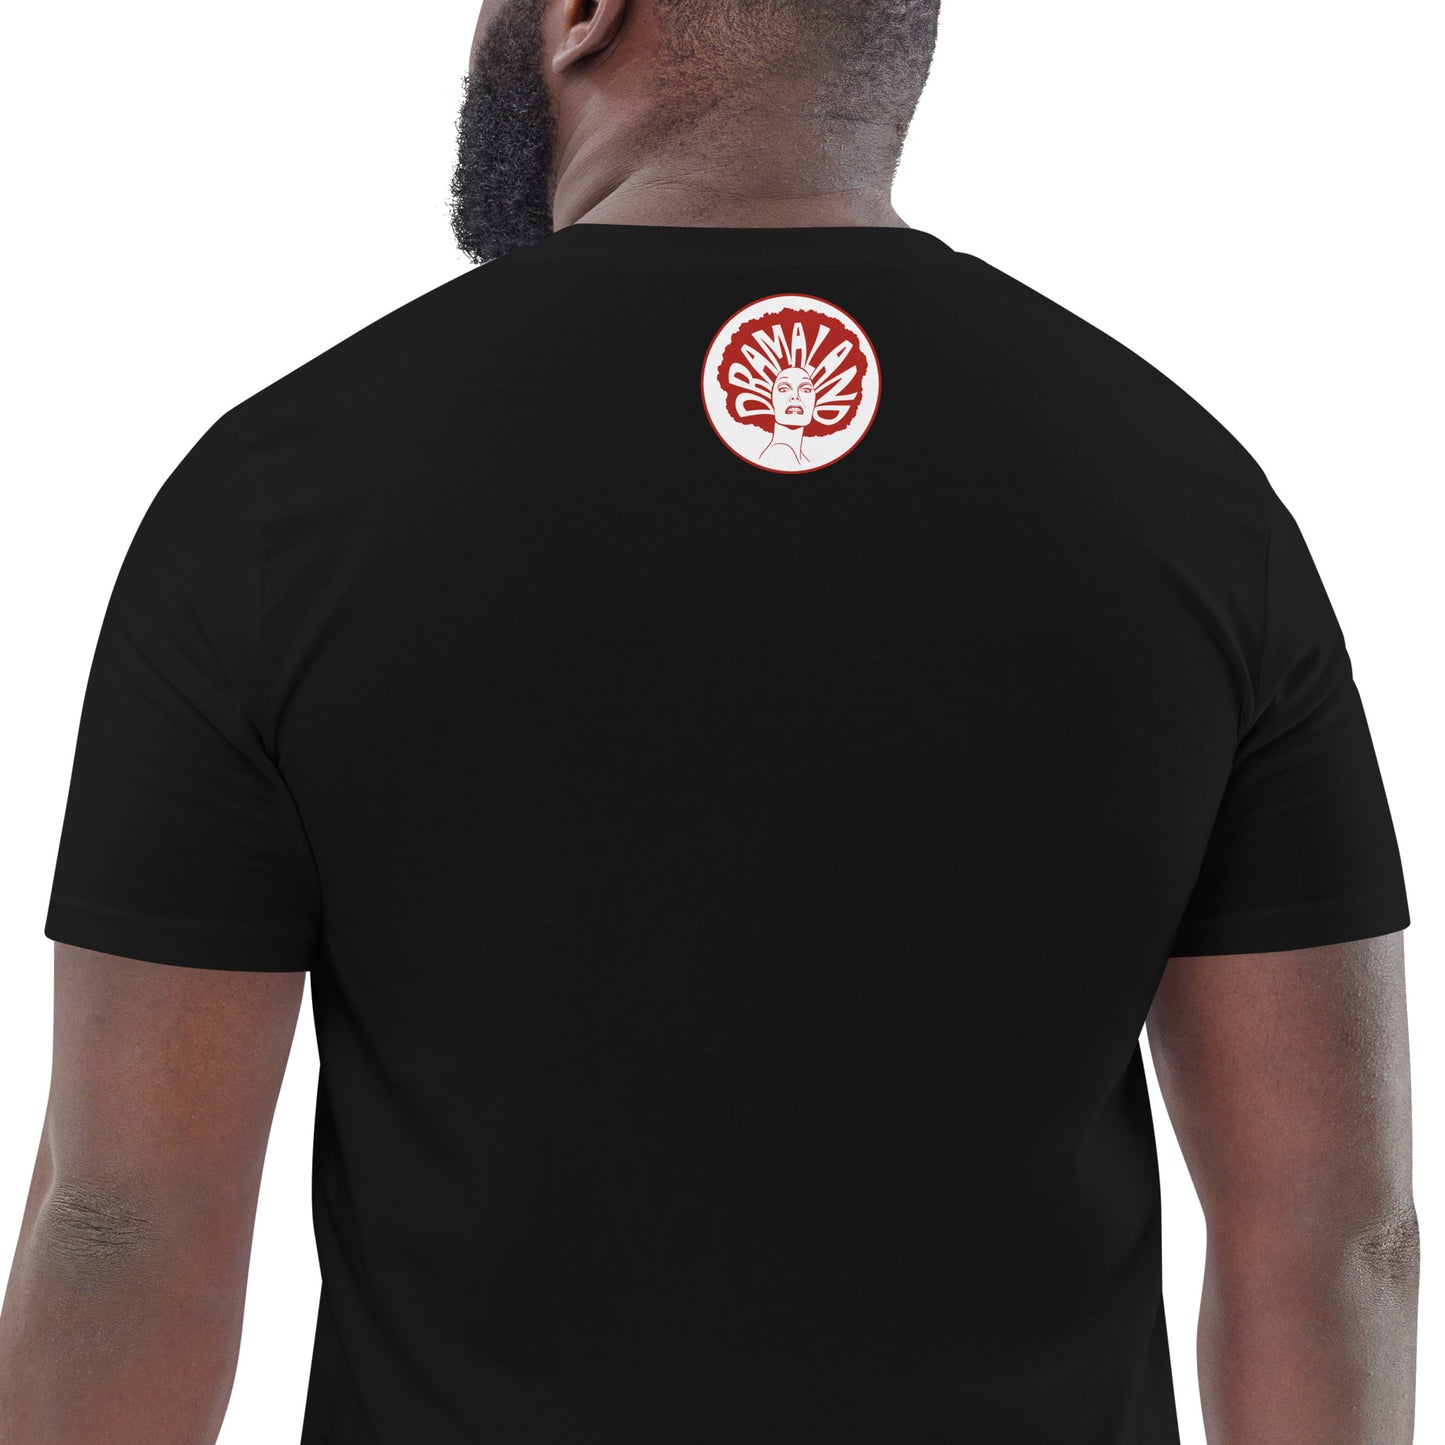 CHER OR NOT CHER short-sleeved black t-shirt